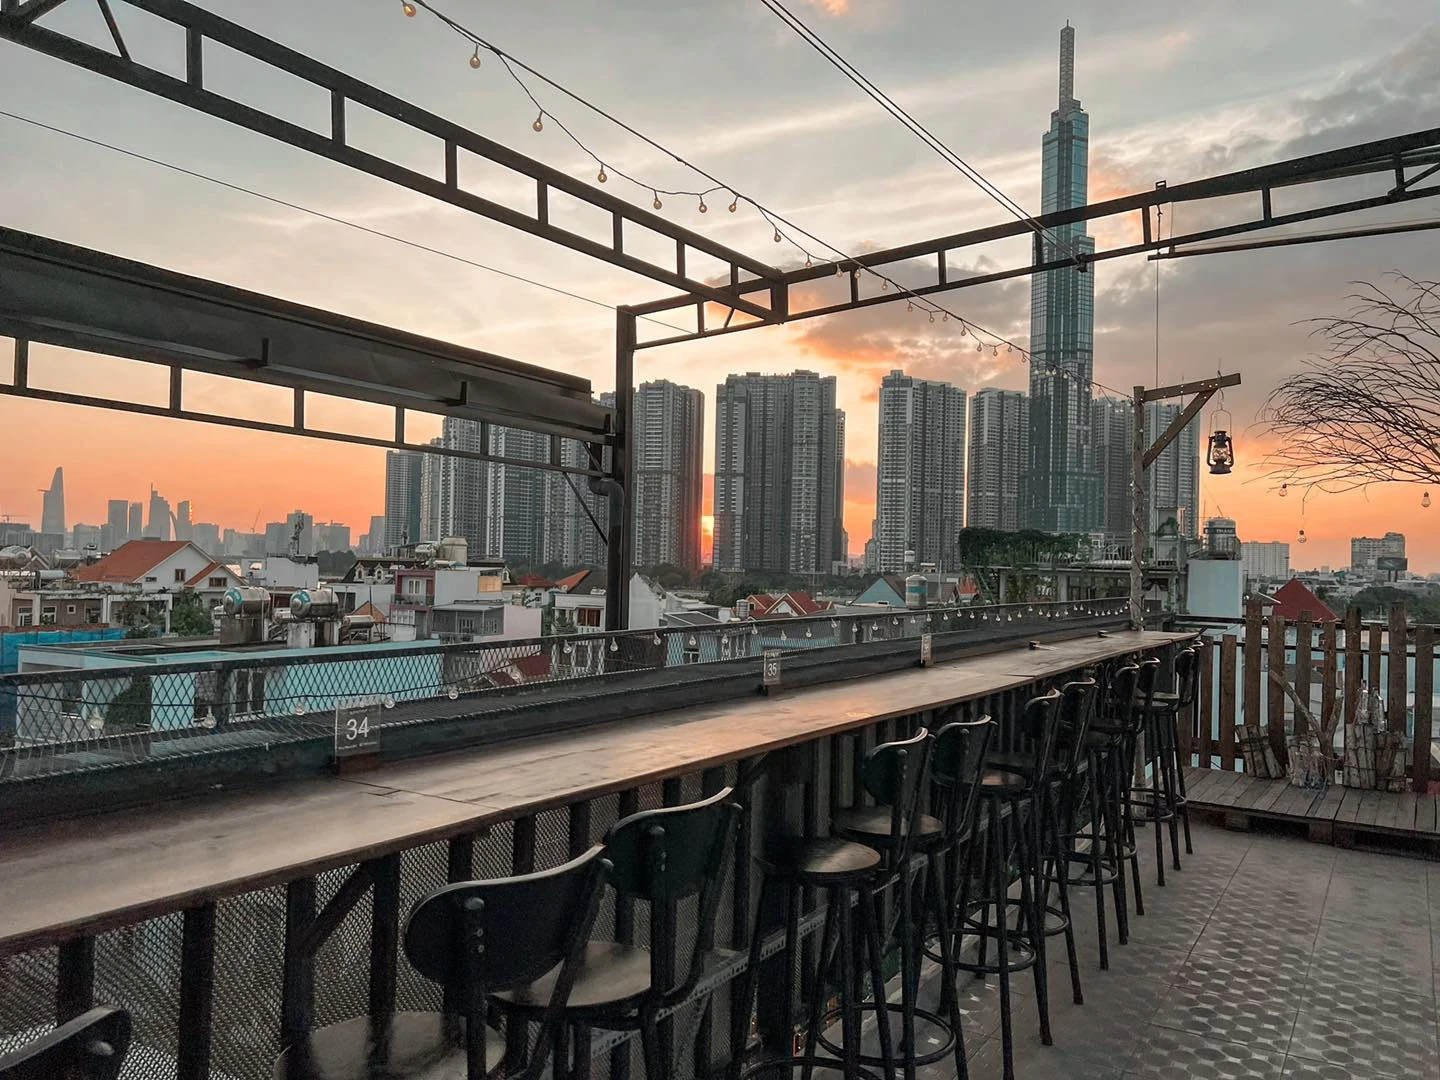 Cực chill với quán cà phê ‘trên trời’ ngắm view sống động tại Sài Gòn